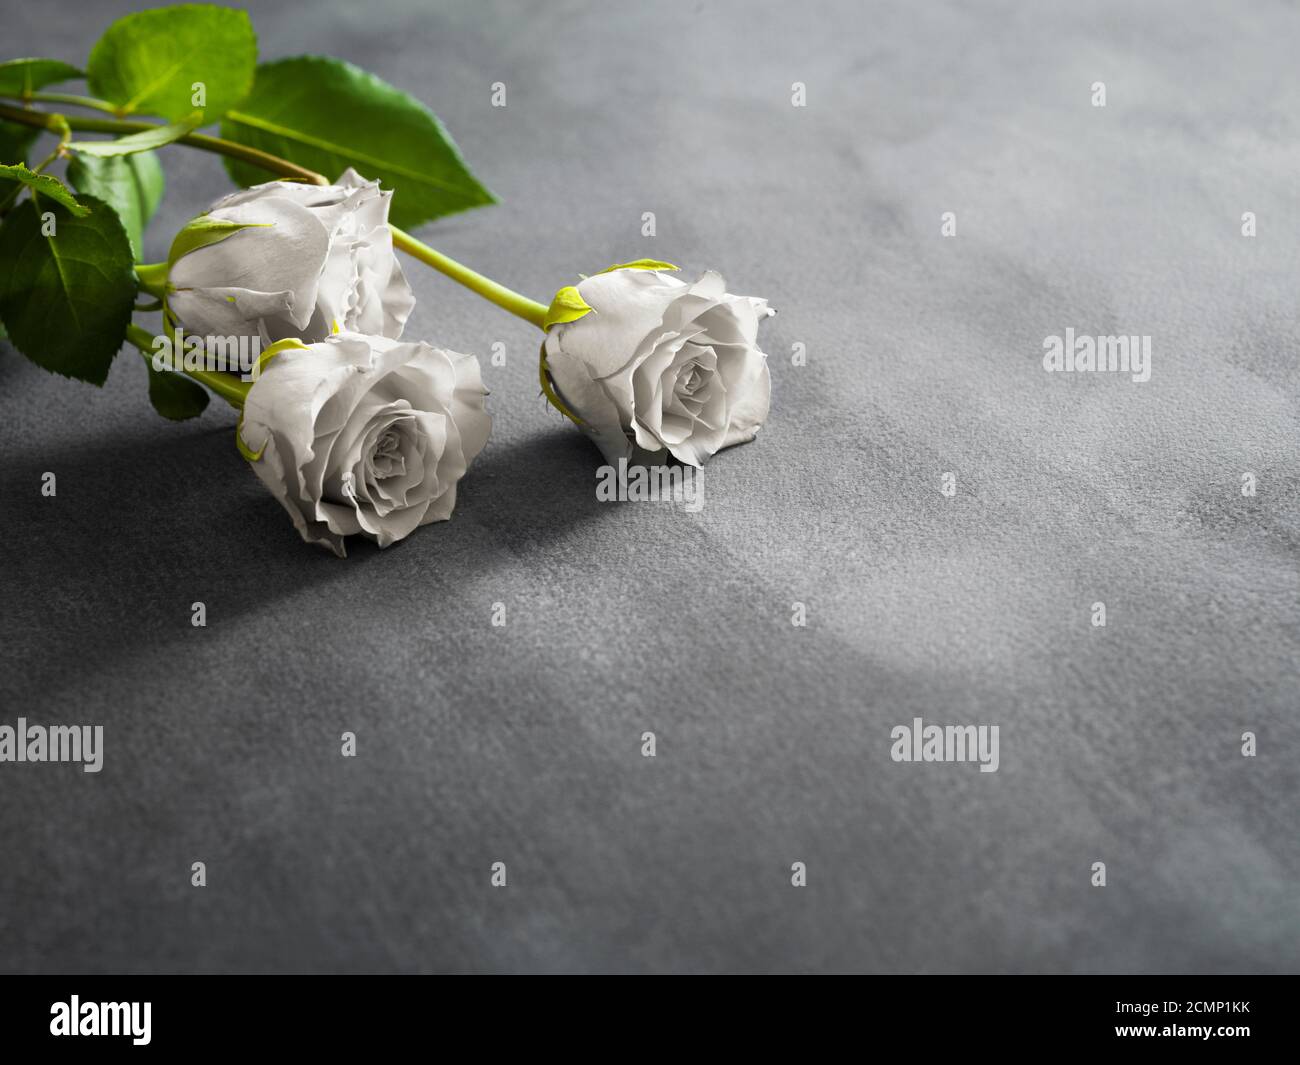 Symbol für Beerdigung. Schöne weiße Rosen auf einem grauen Stein  Hintergrund Stockfotografie - Alamy